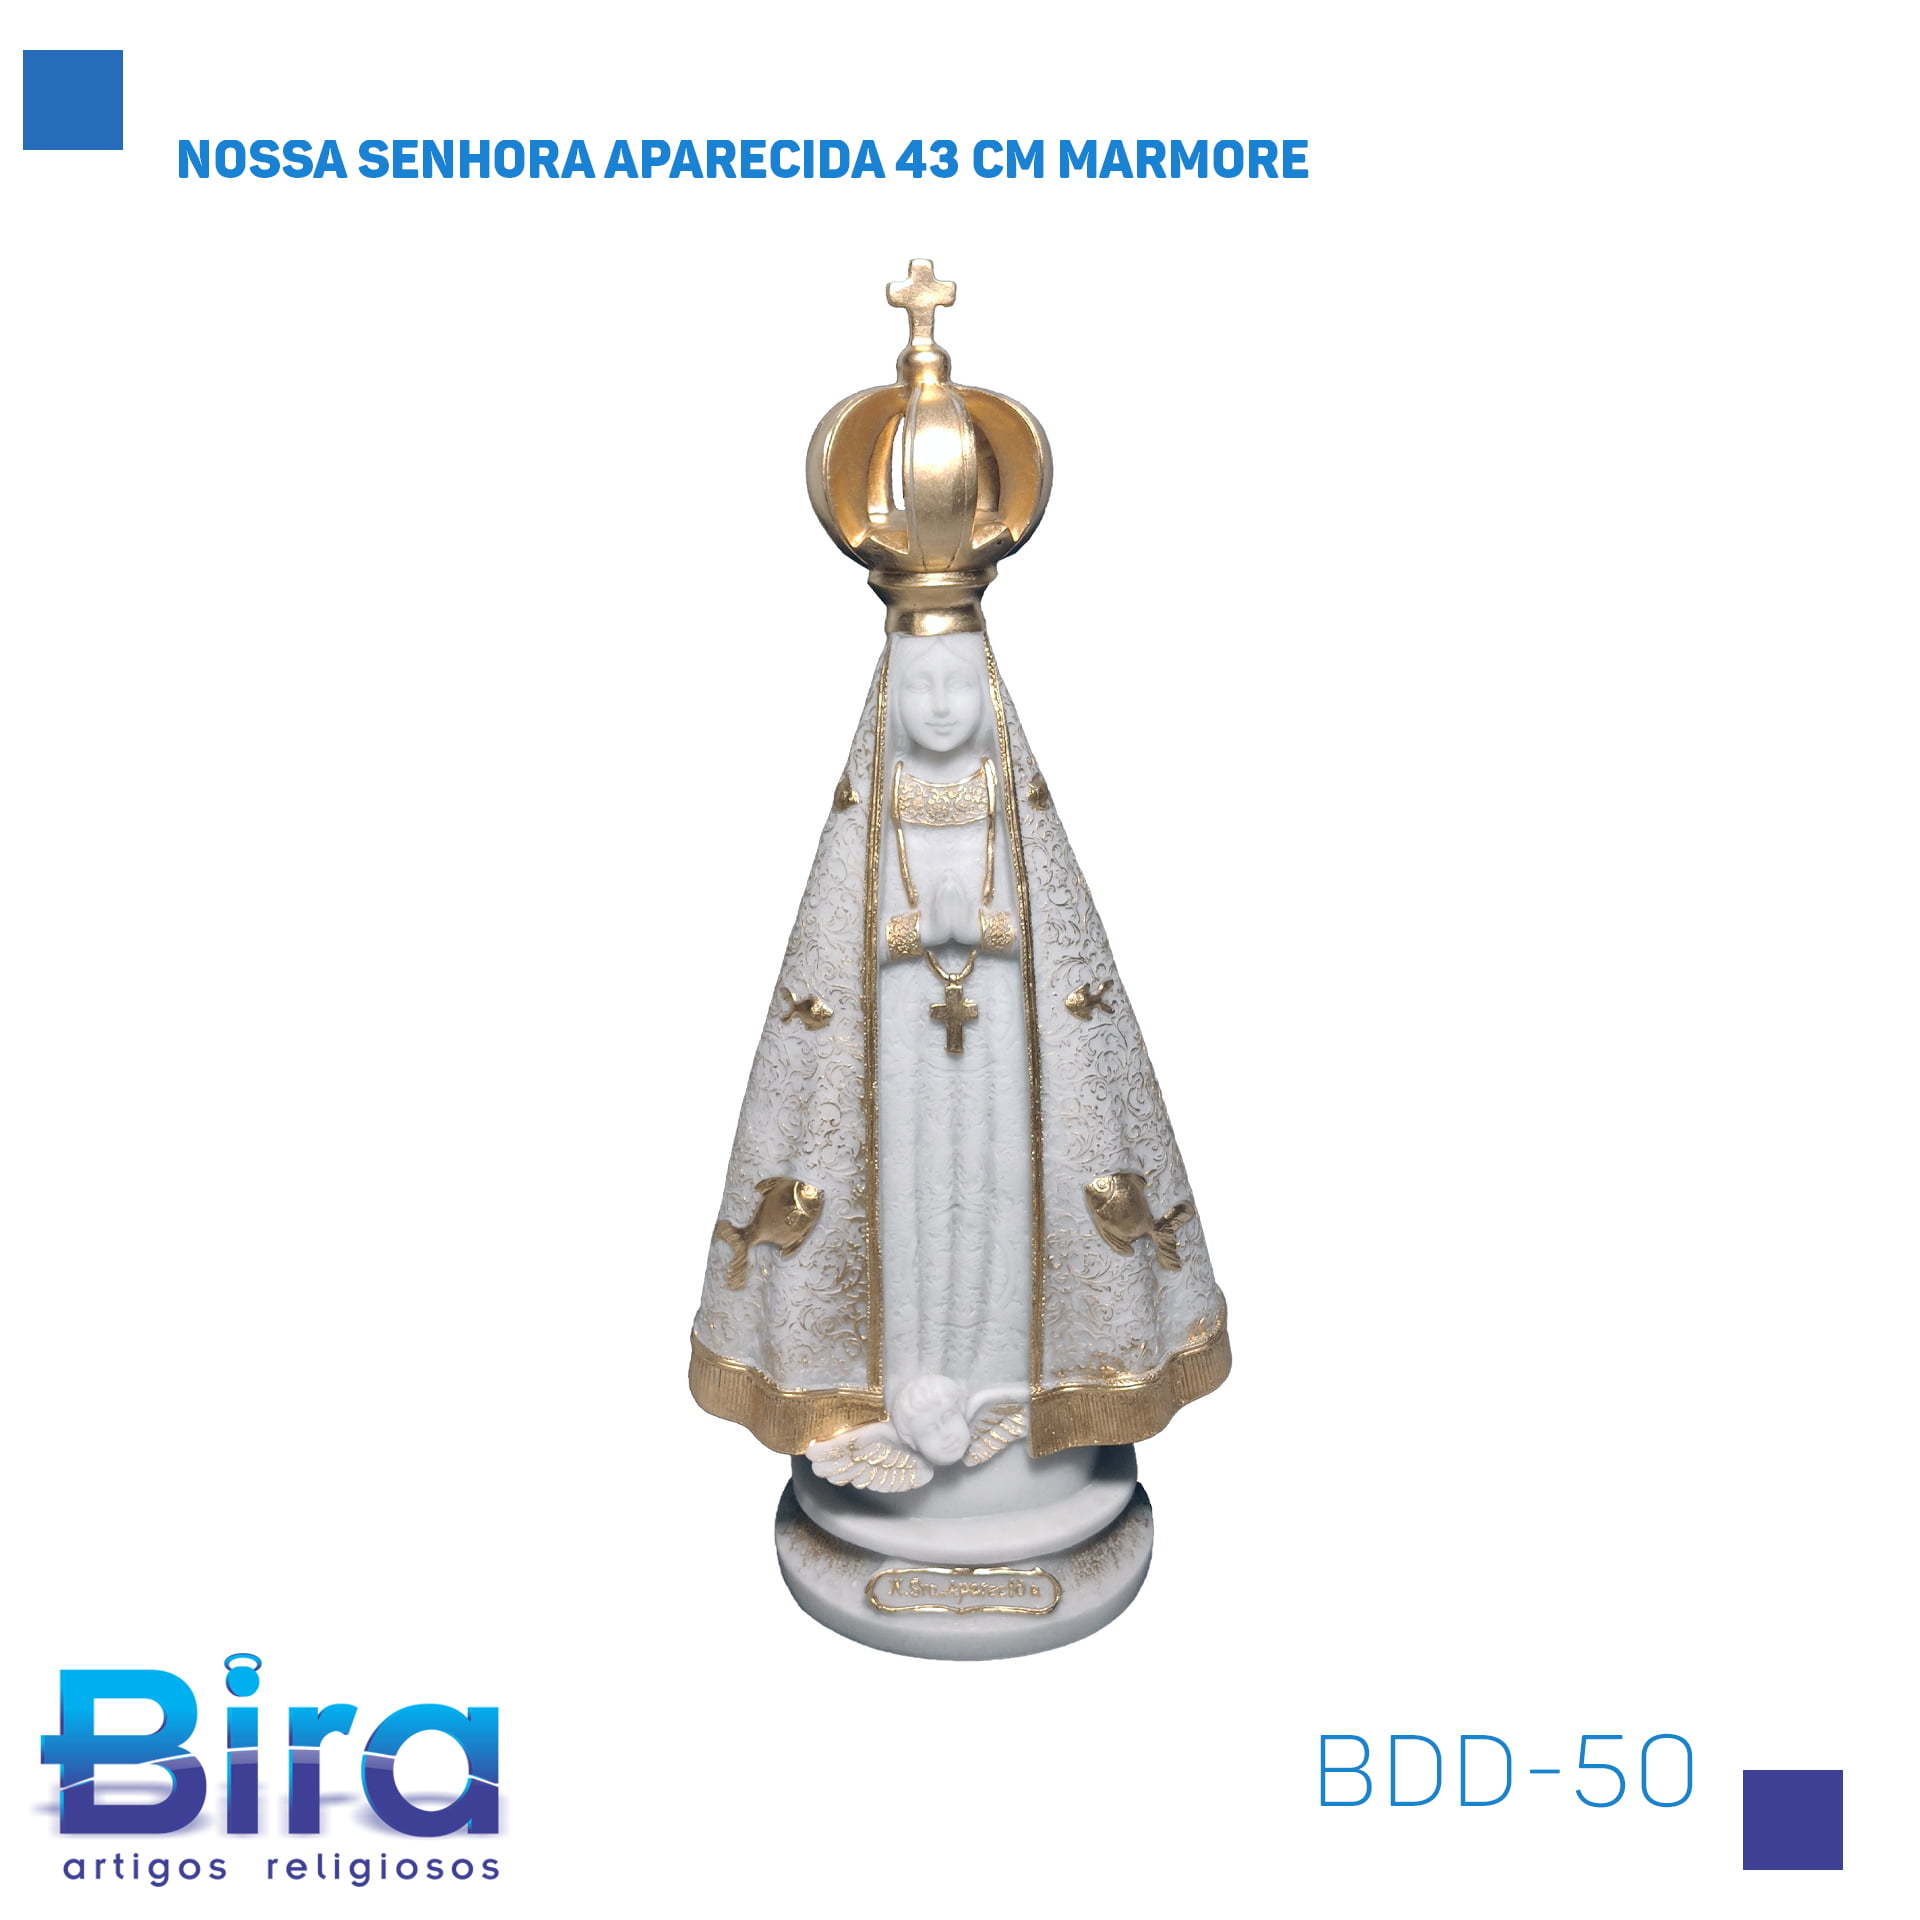 Bira Artigos Religiosos - NOSSA SENHORA APARECIDA 43 CM MARMORE CÓD.: BDD-50